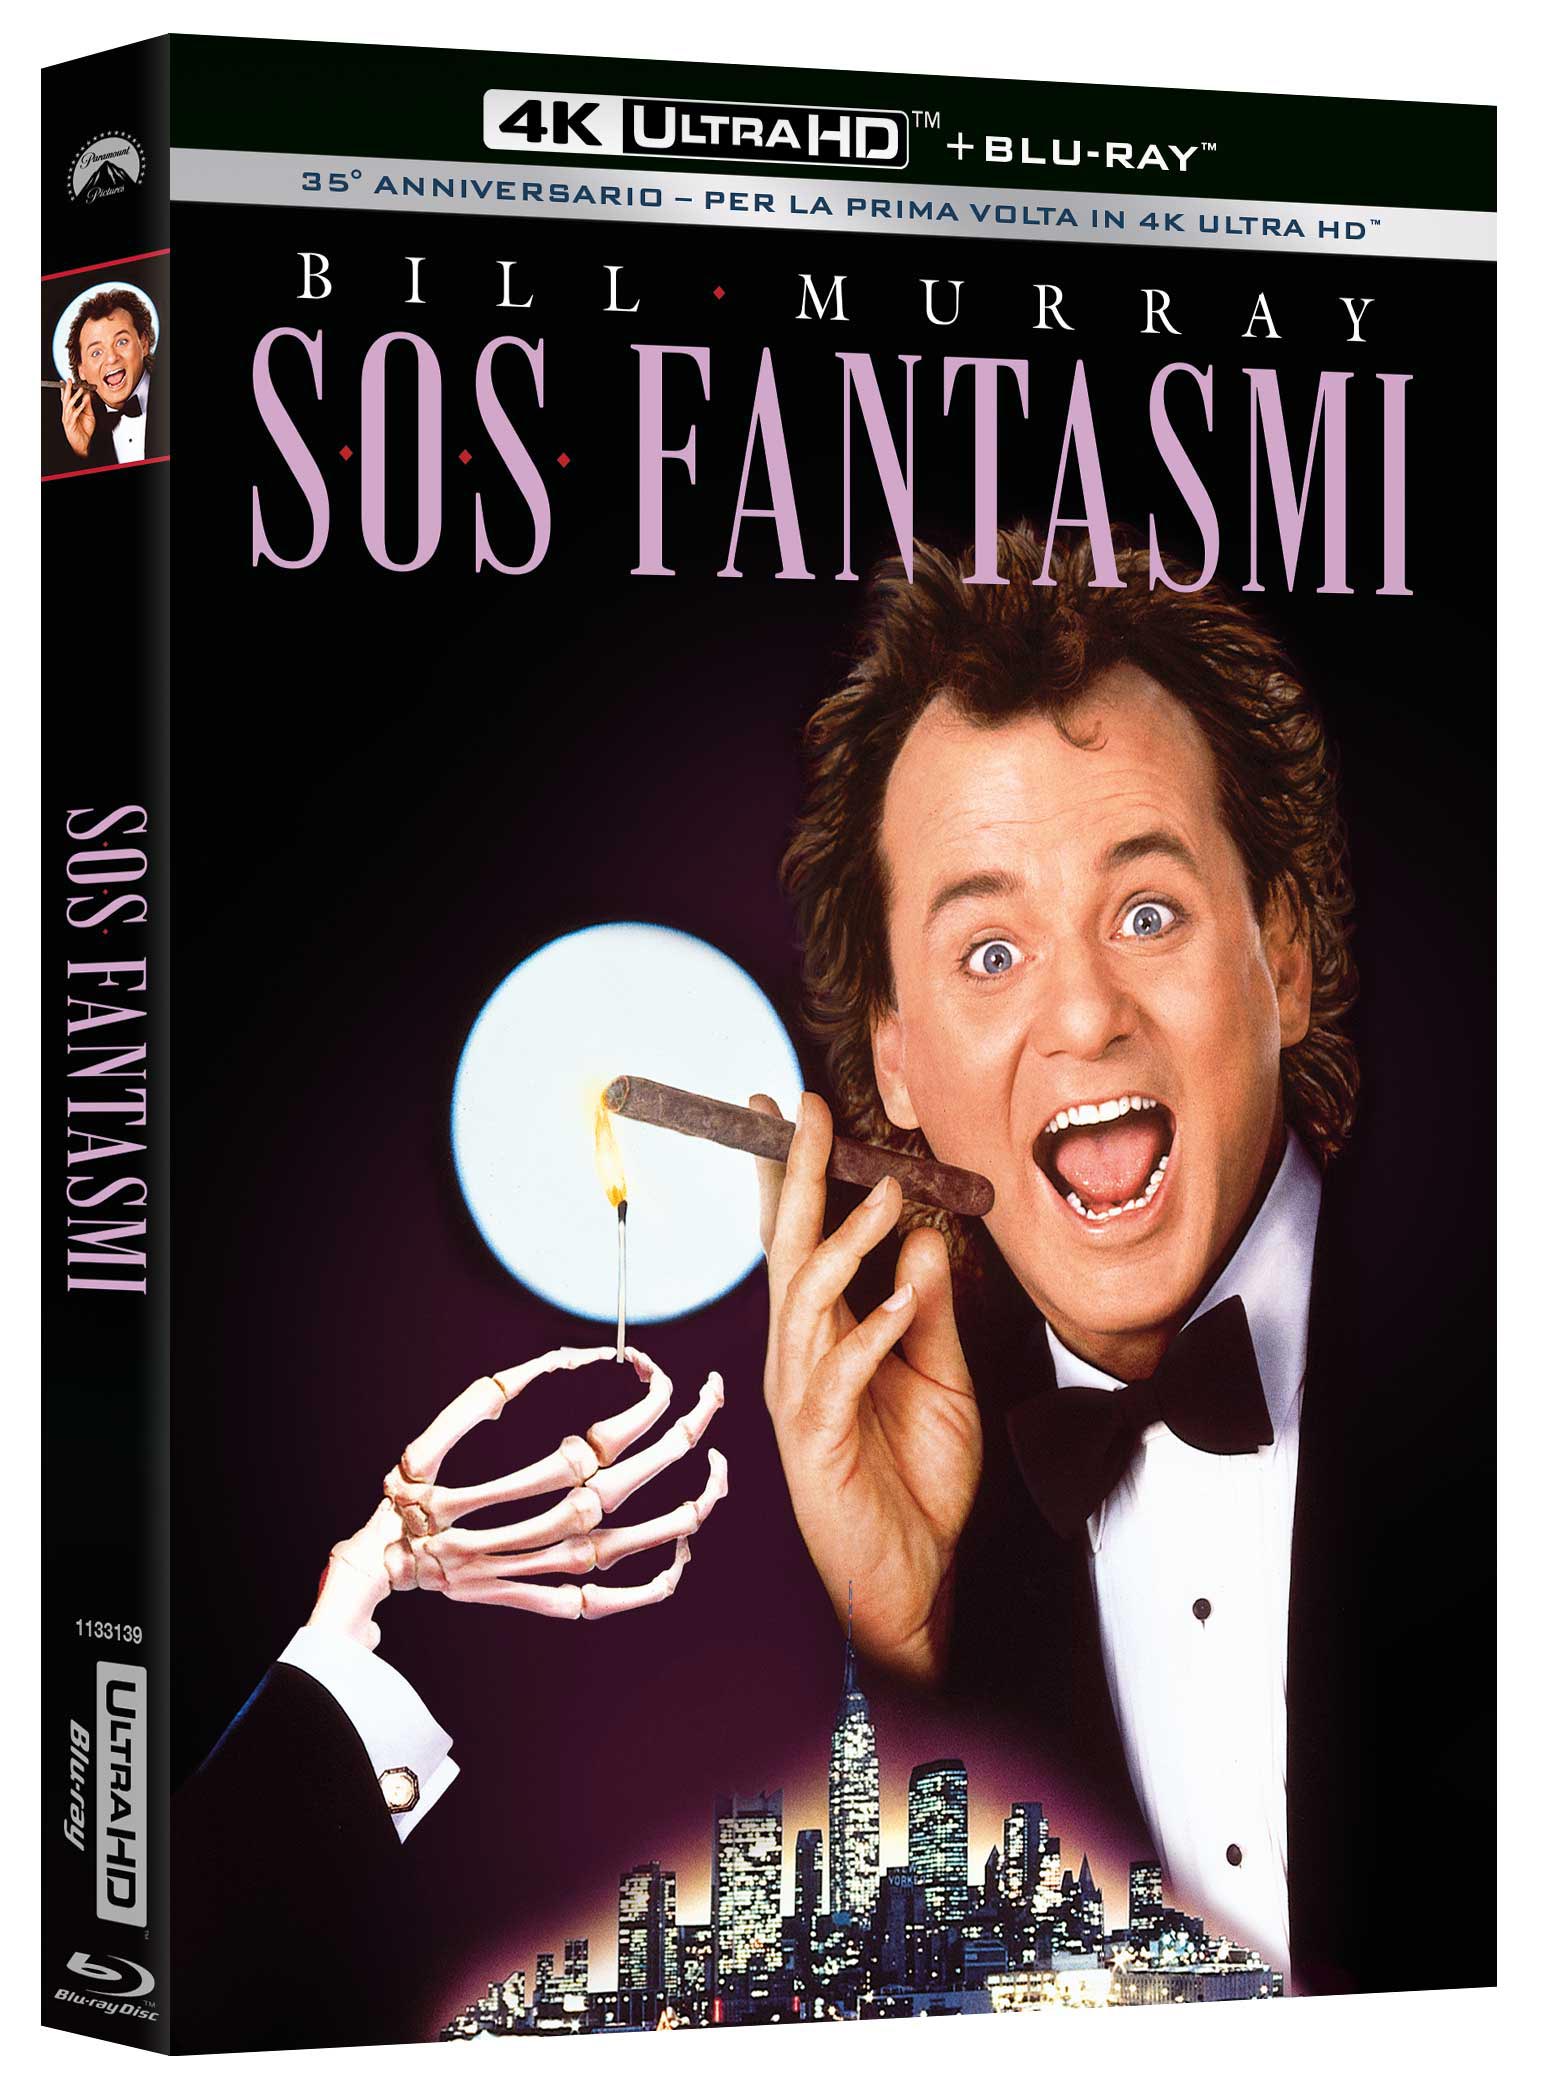 SOS Fantasmi in 4K UHD + Blu-ray